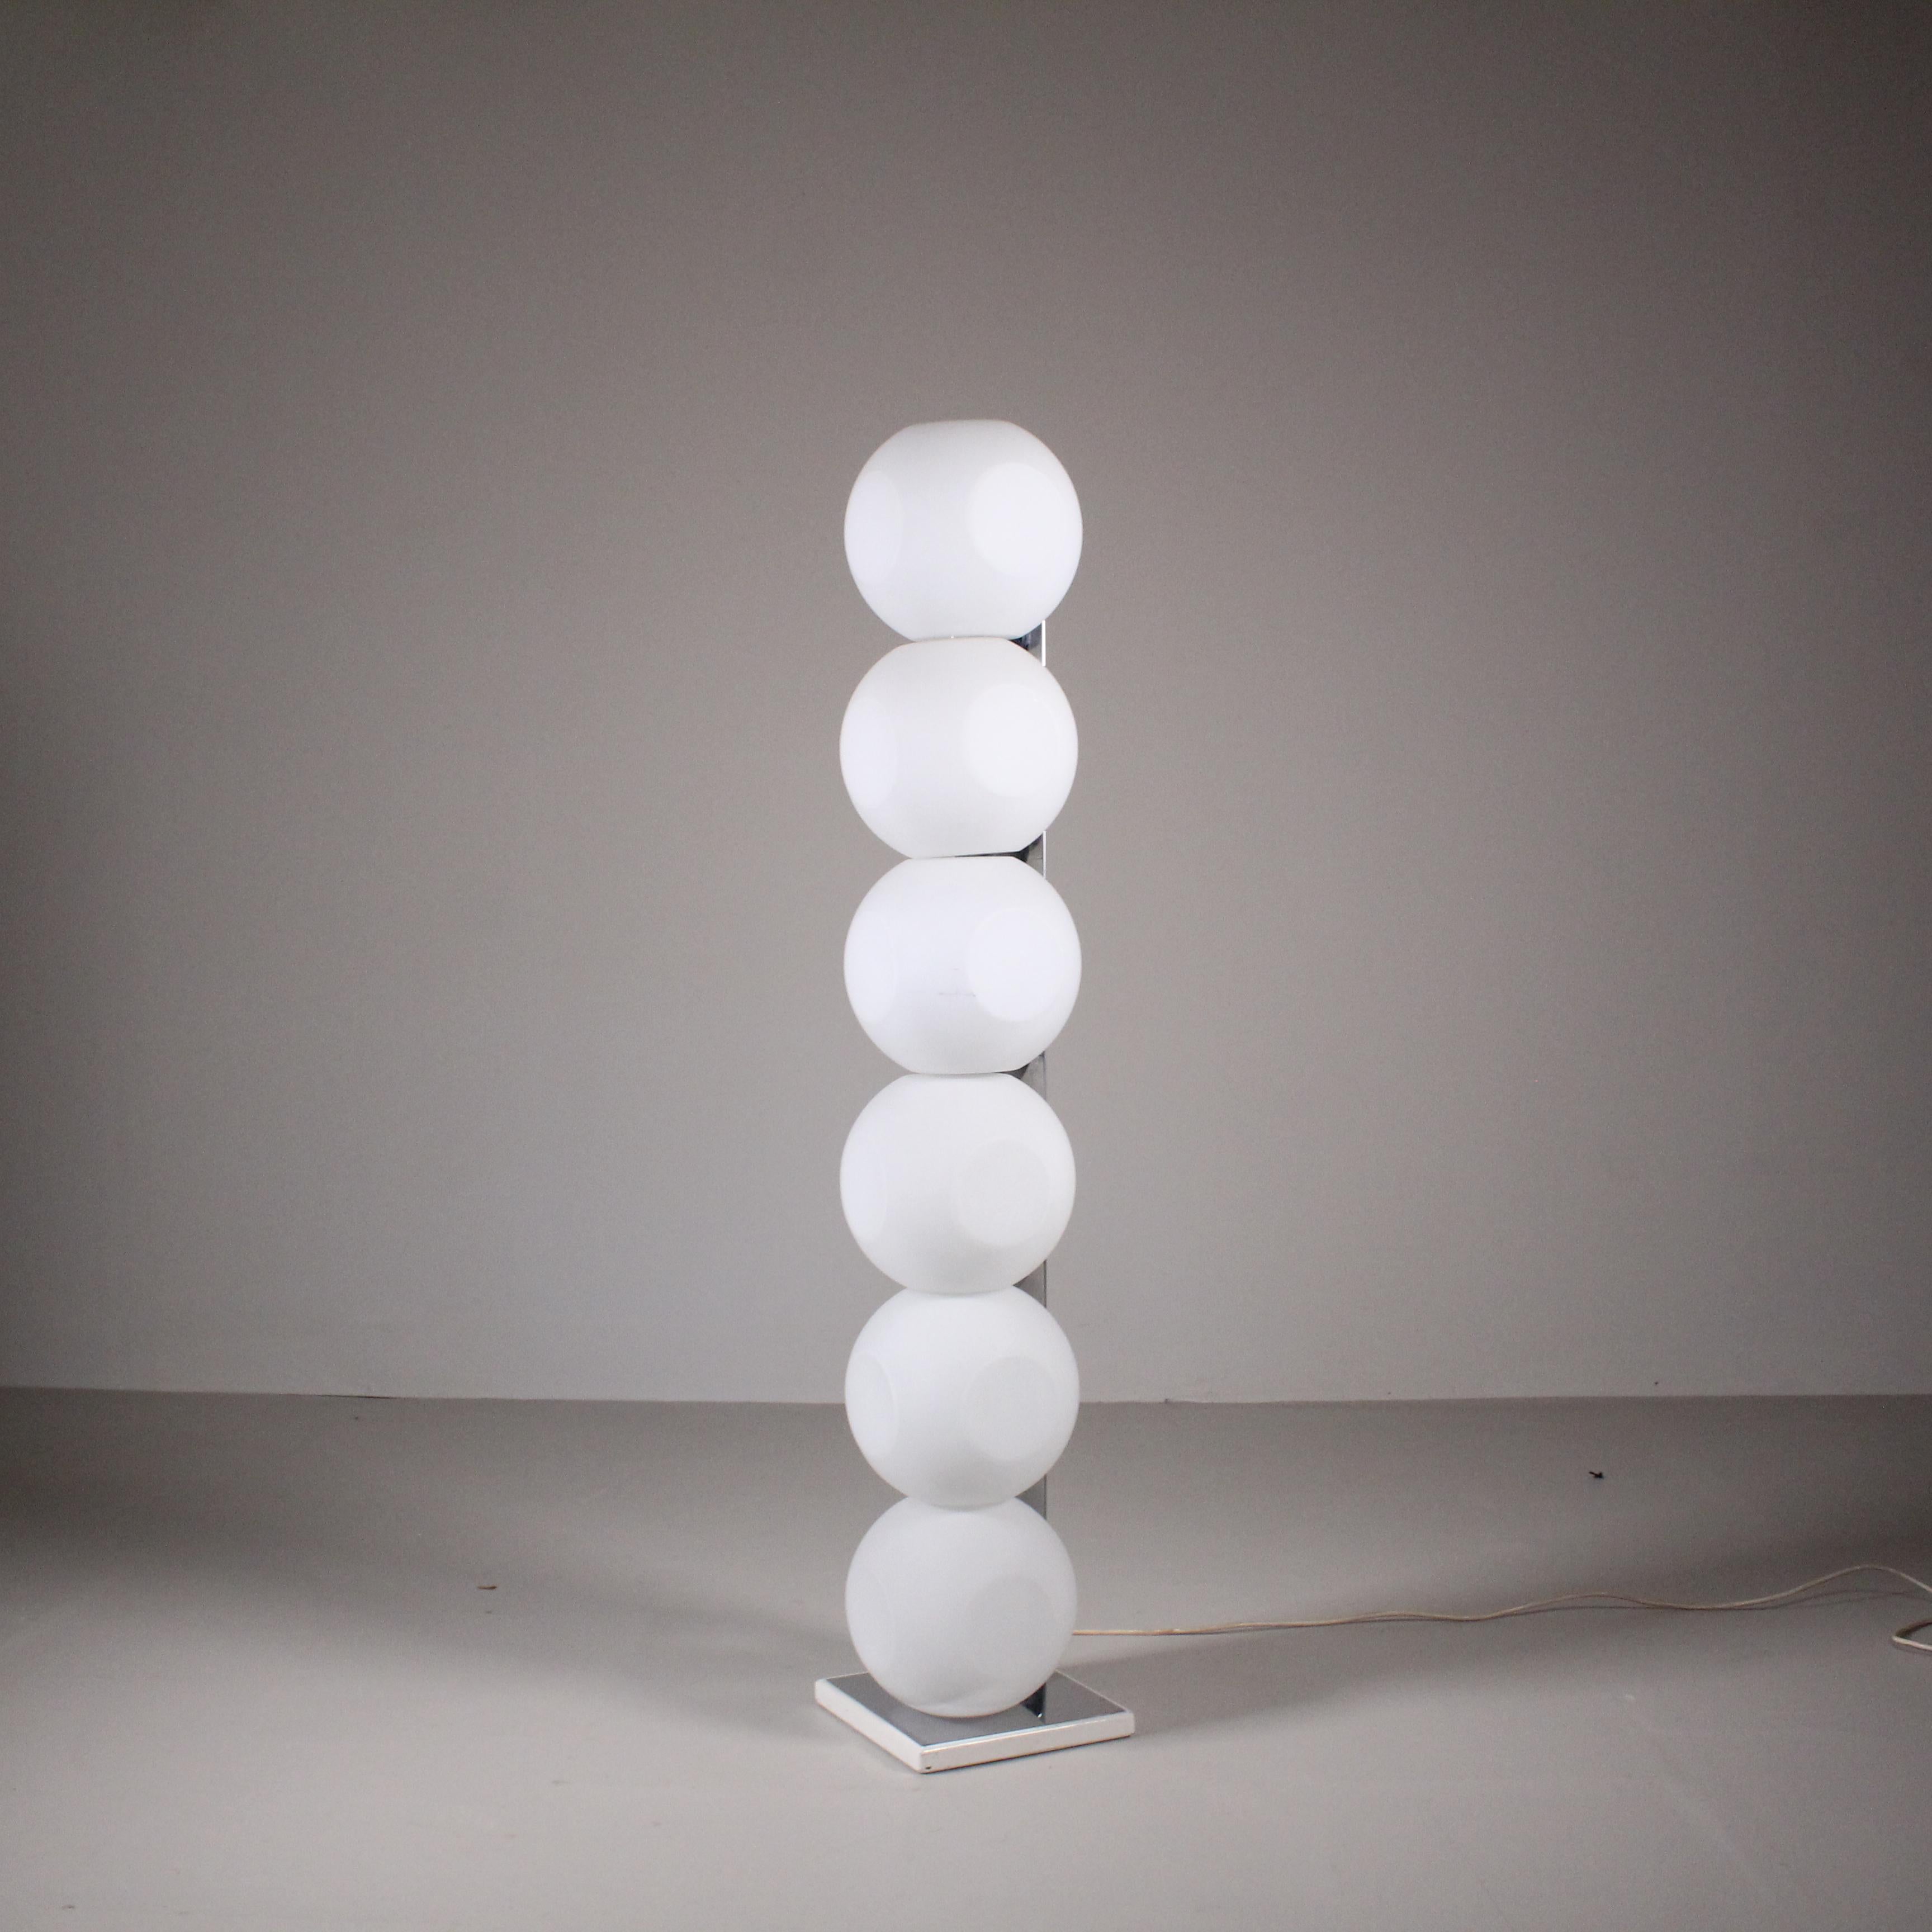 Avec un design moderne et raffiné, cette lampe combine des formes sinueuses et des matériaux de haute qualité pour créer un éclairage d'ambiance inégalé. Sa fine structure métallique s'intègre harmonieusement à tous les styles d'ameublement, tandis